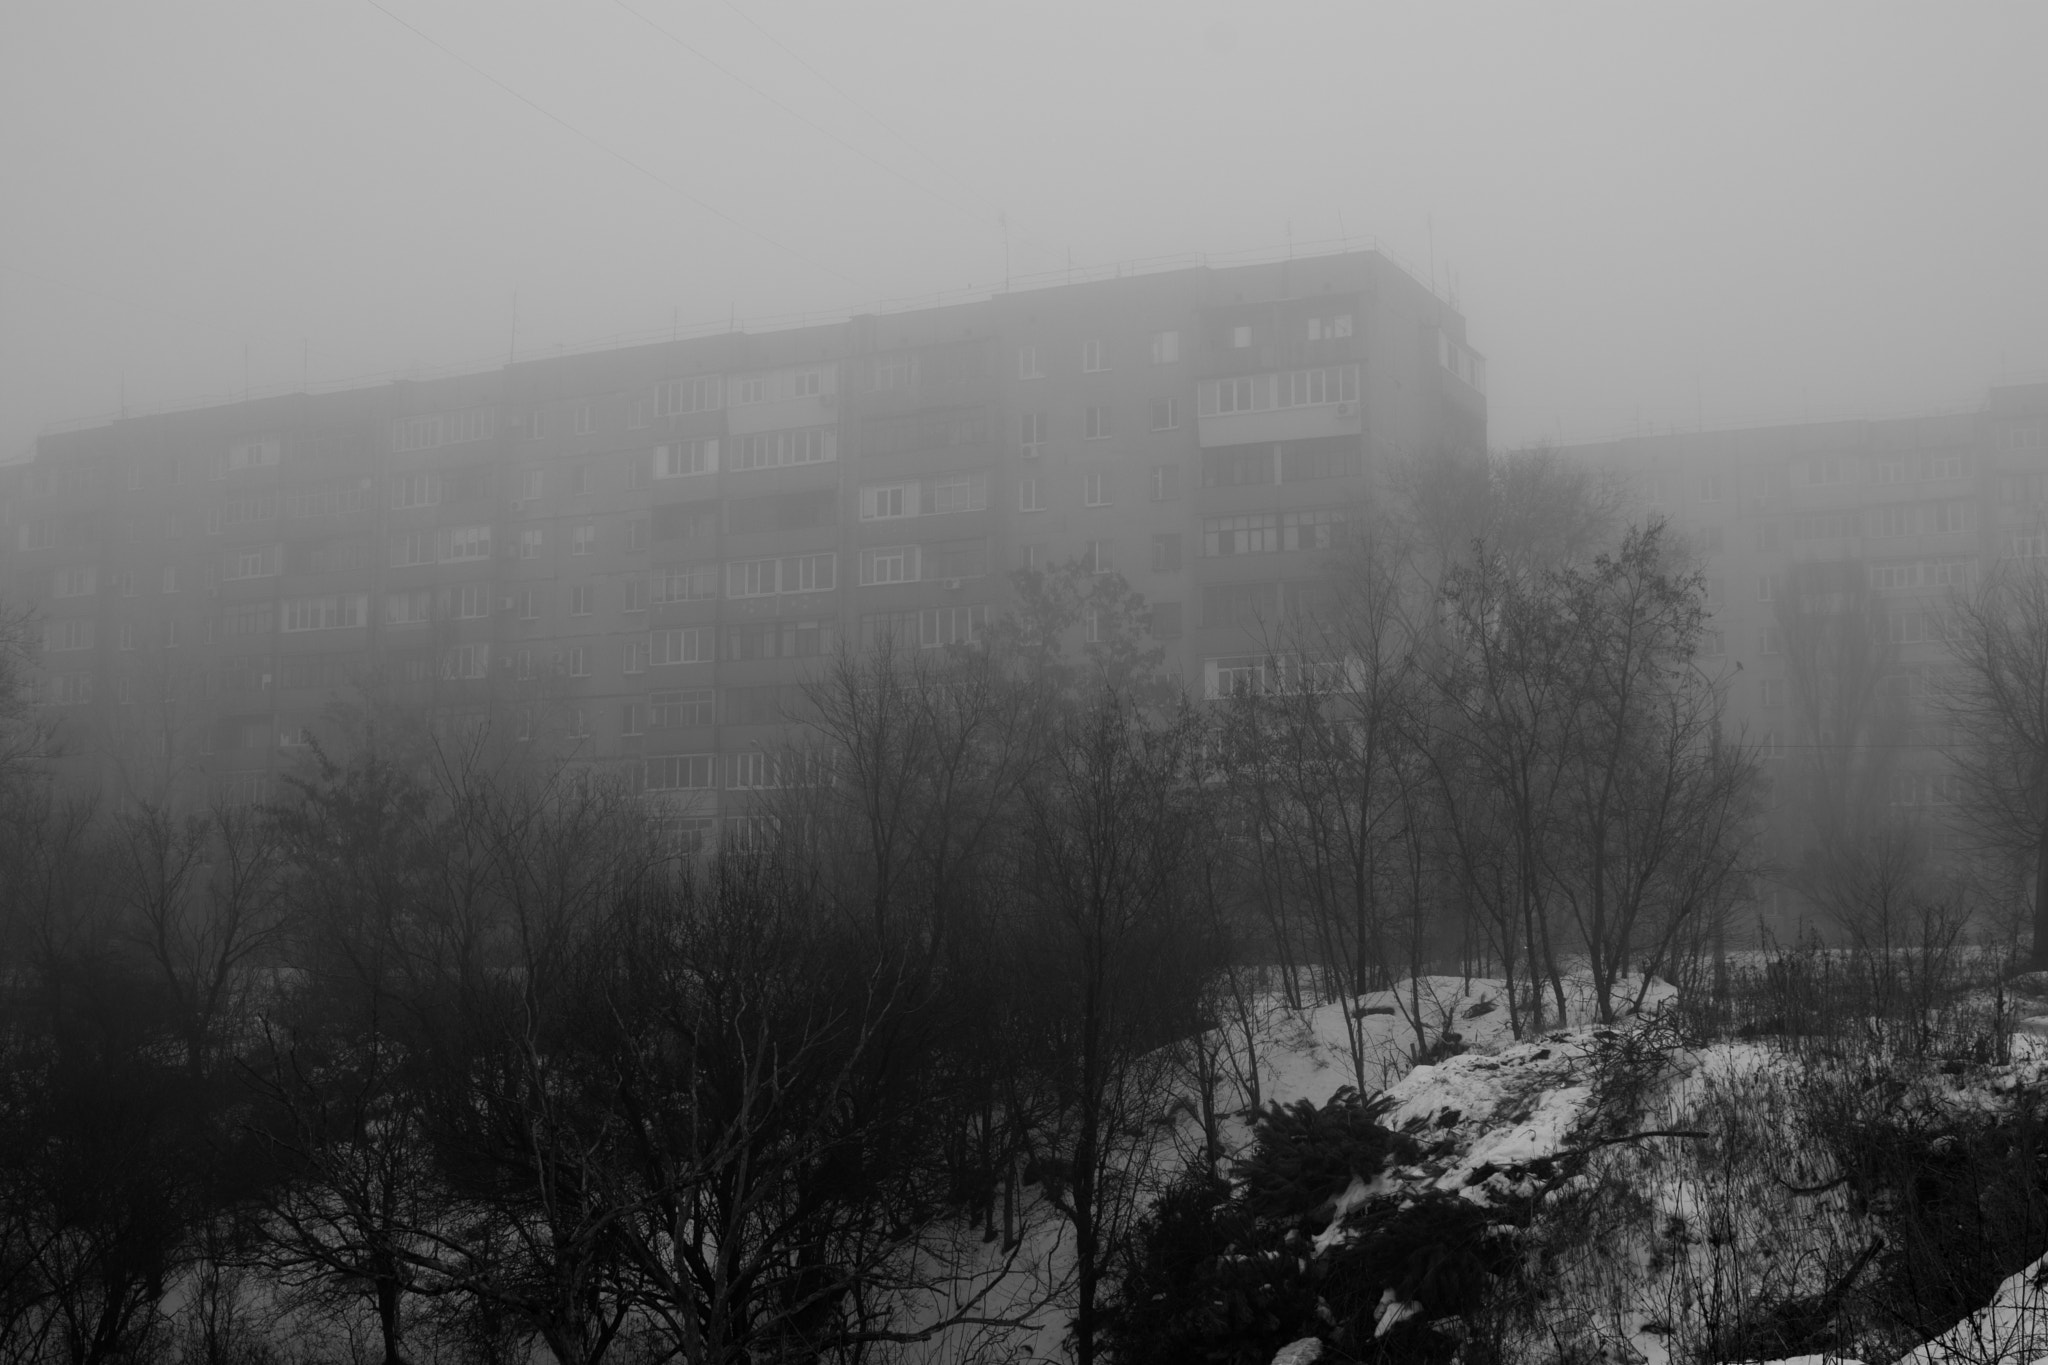 AF Zoom-Nikkor 28-70mm f/3.5-4.5D sample photo. Winter walking: the mist photography